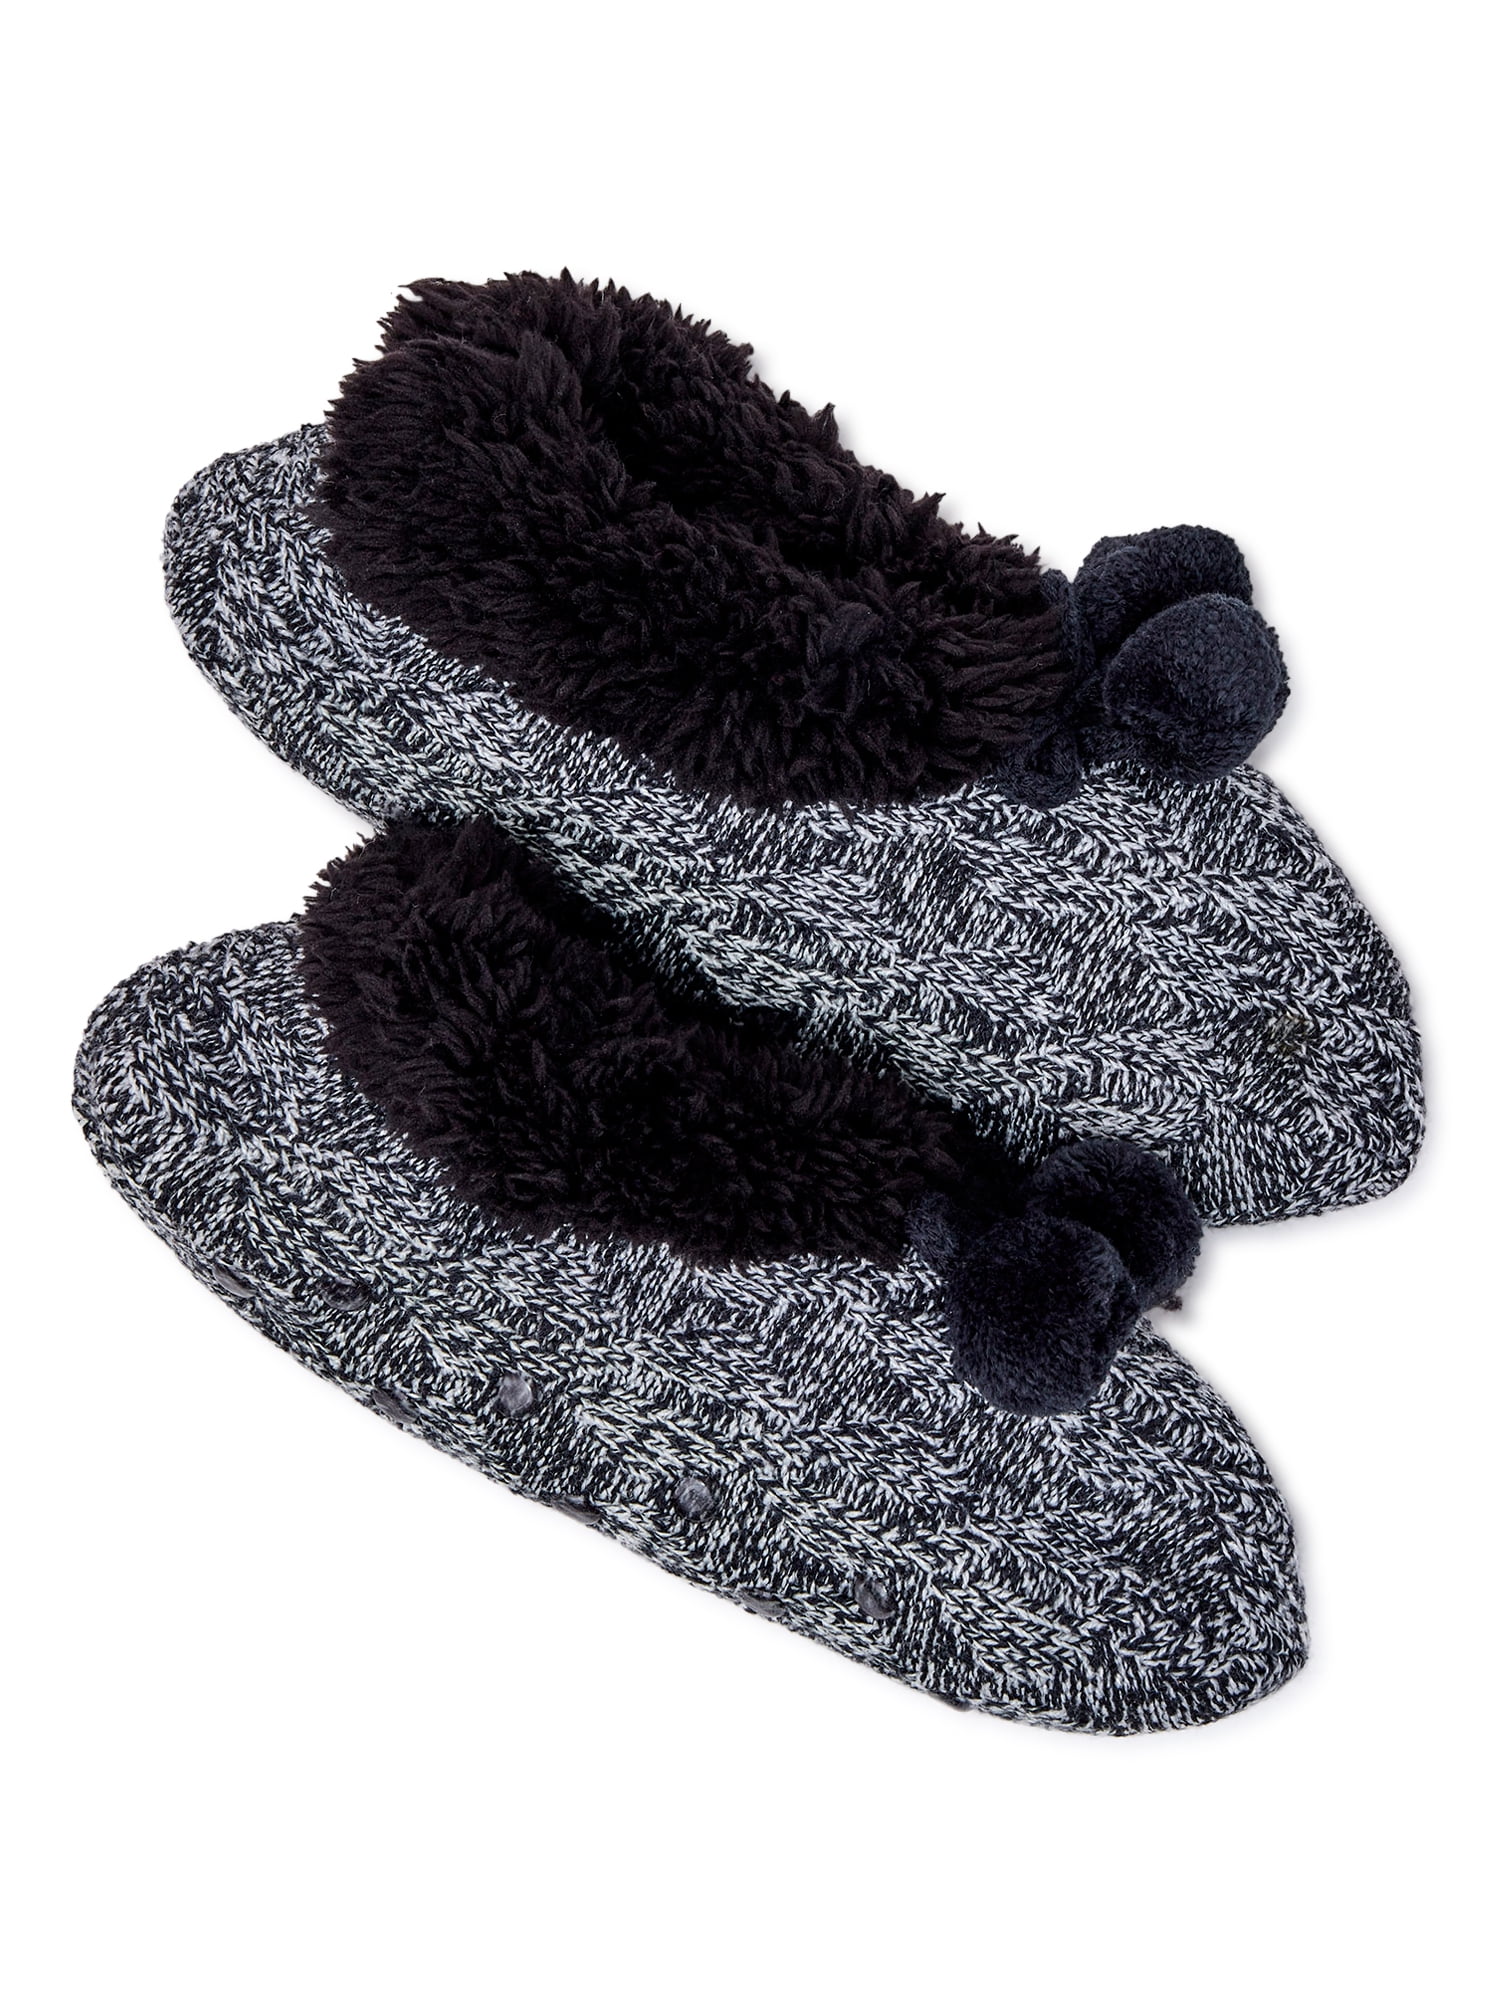 Joyspun Women's Knit Slipper Socks, 1-Pack, Size 4-10